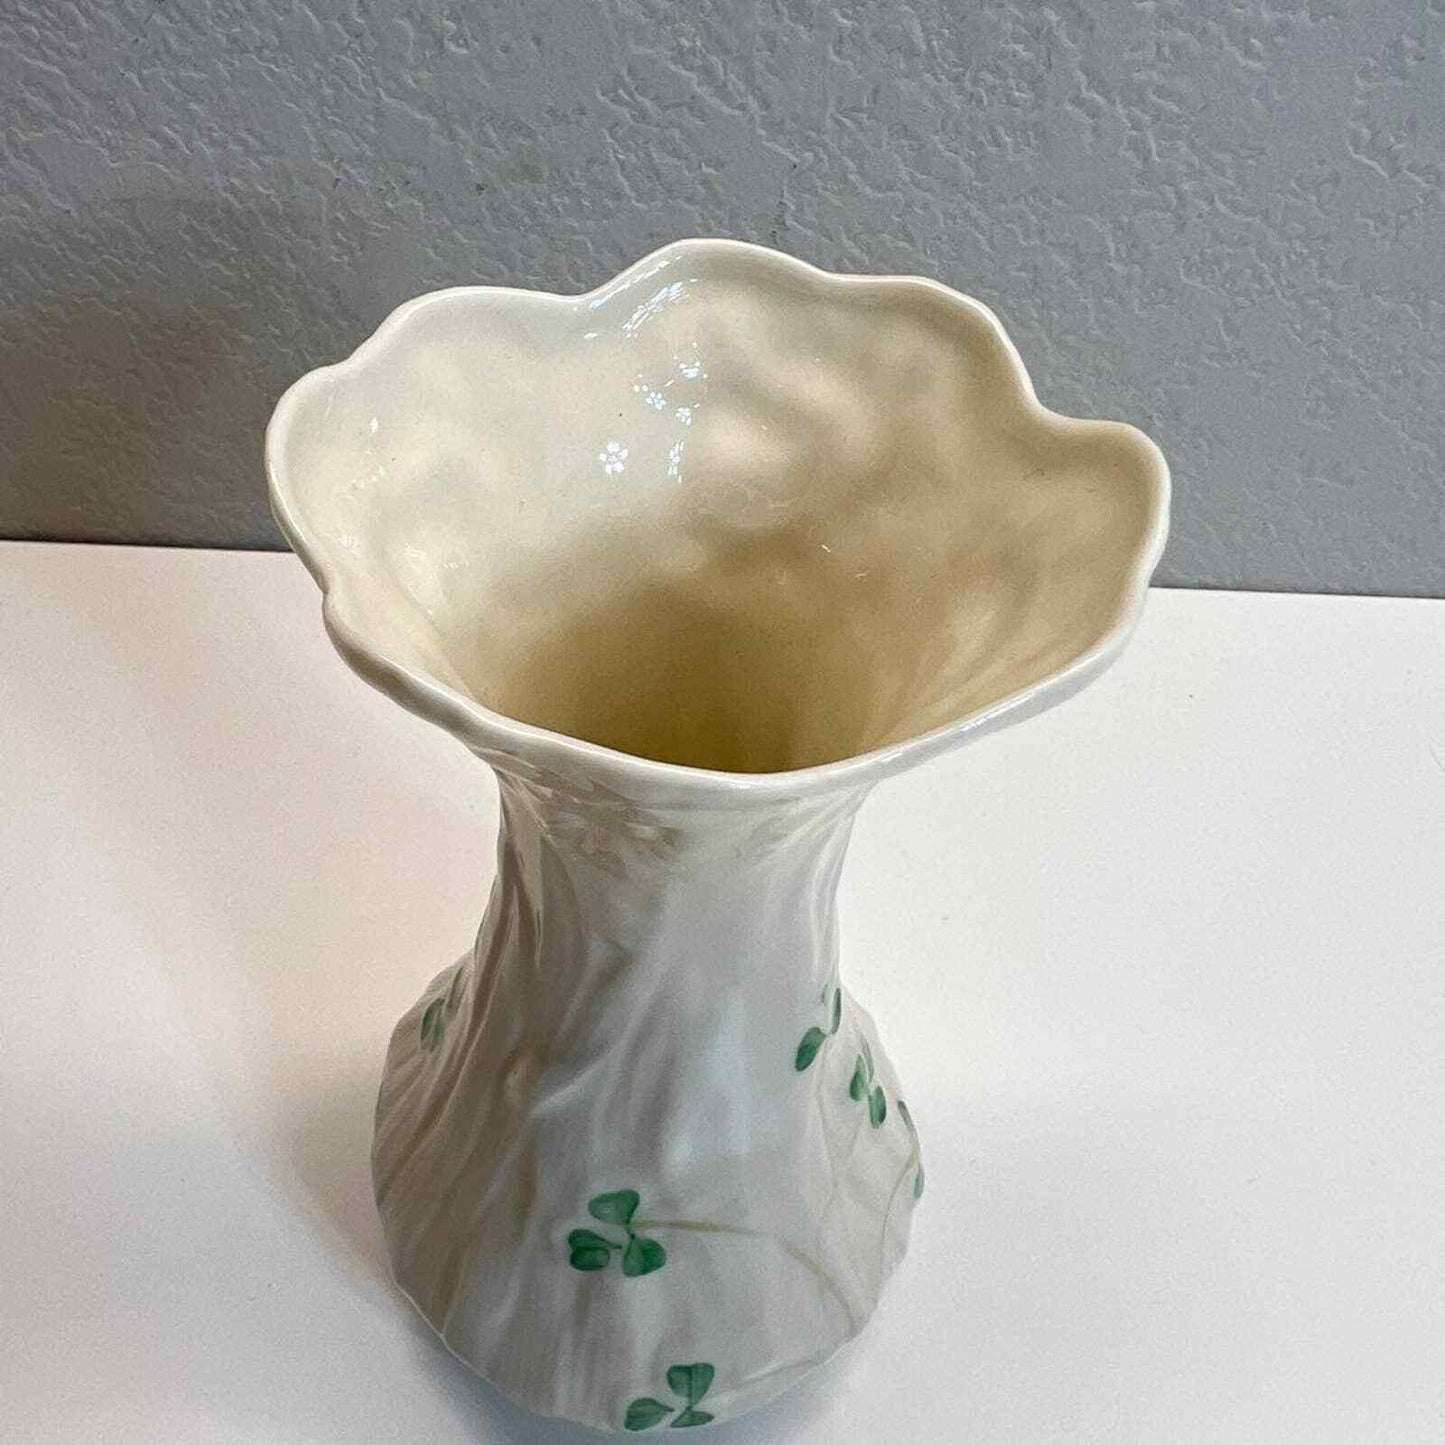 Belleek Vase Shamrocks Flower Ireland Pottery Daisy Spill Porcelain Home Decor